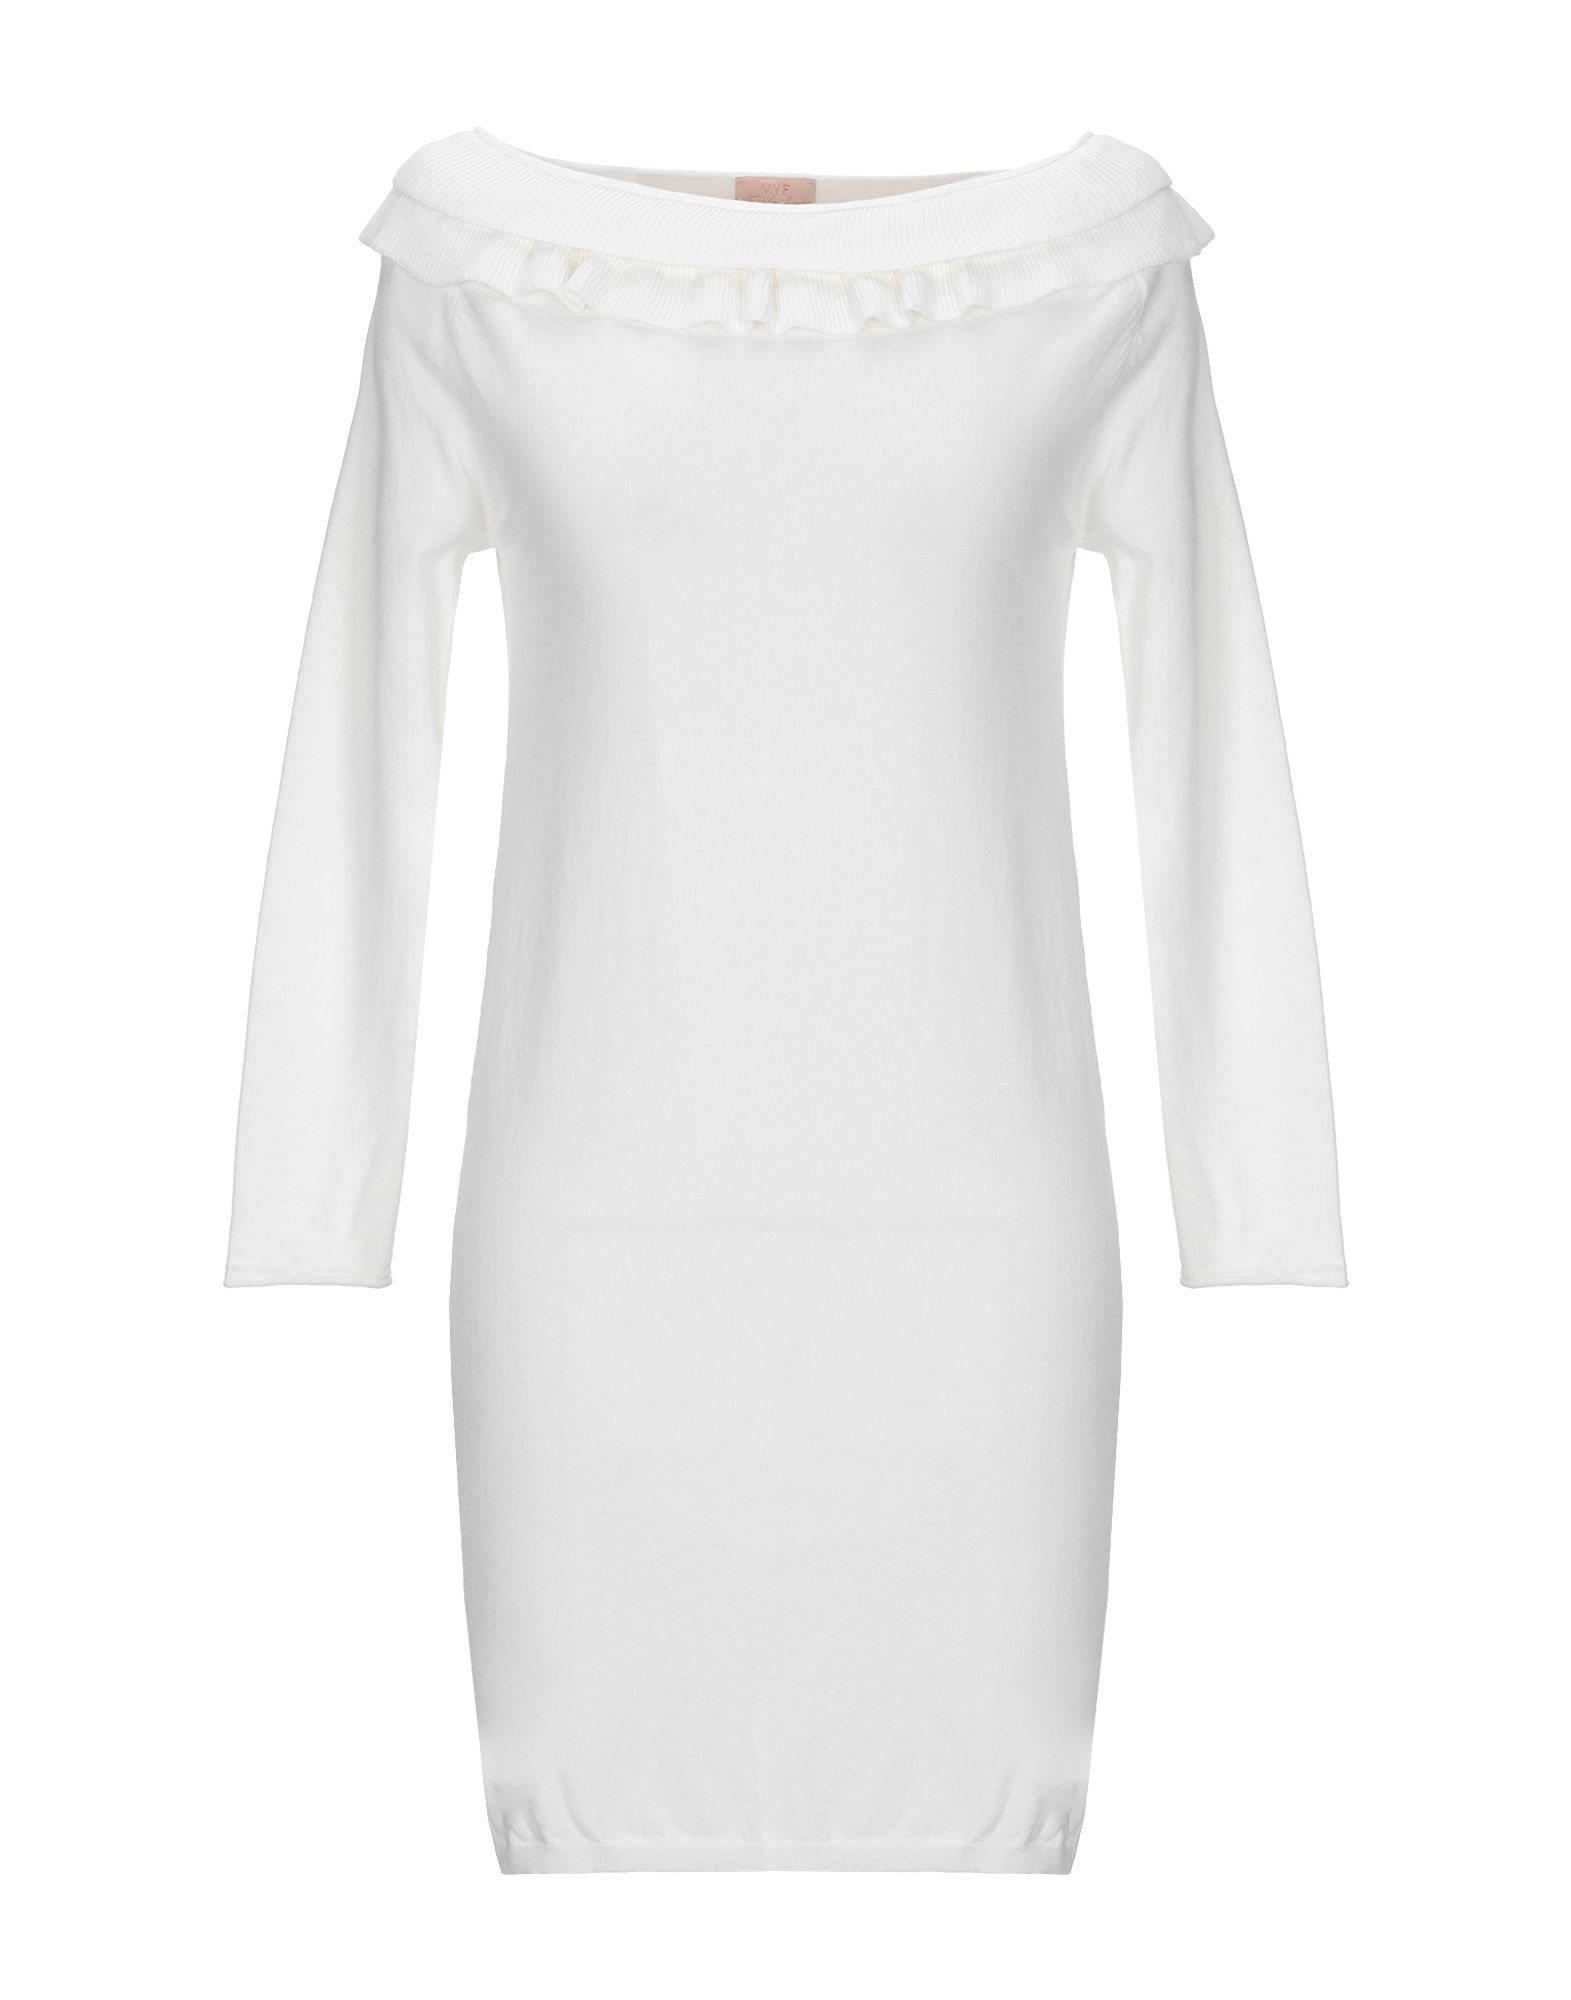 Короткое платье  - Белый цвет